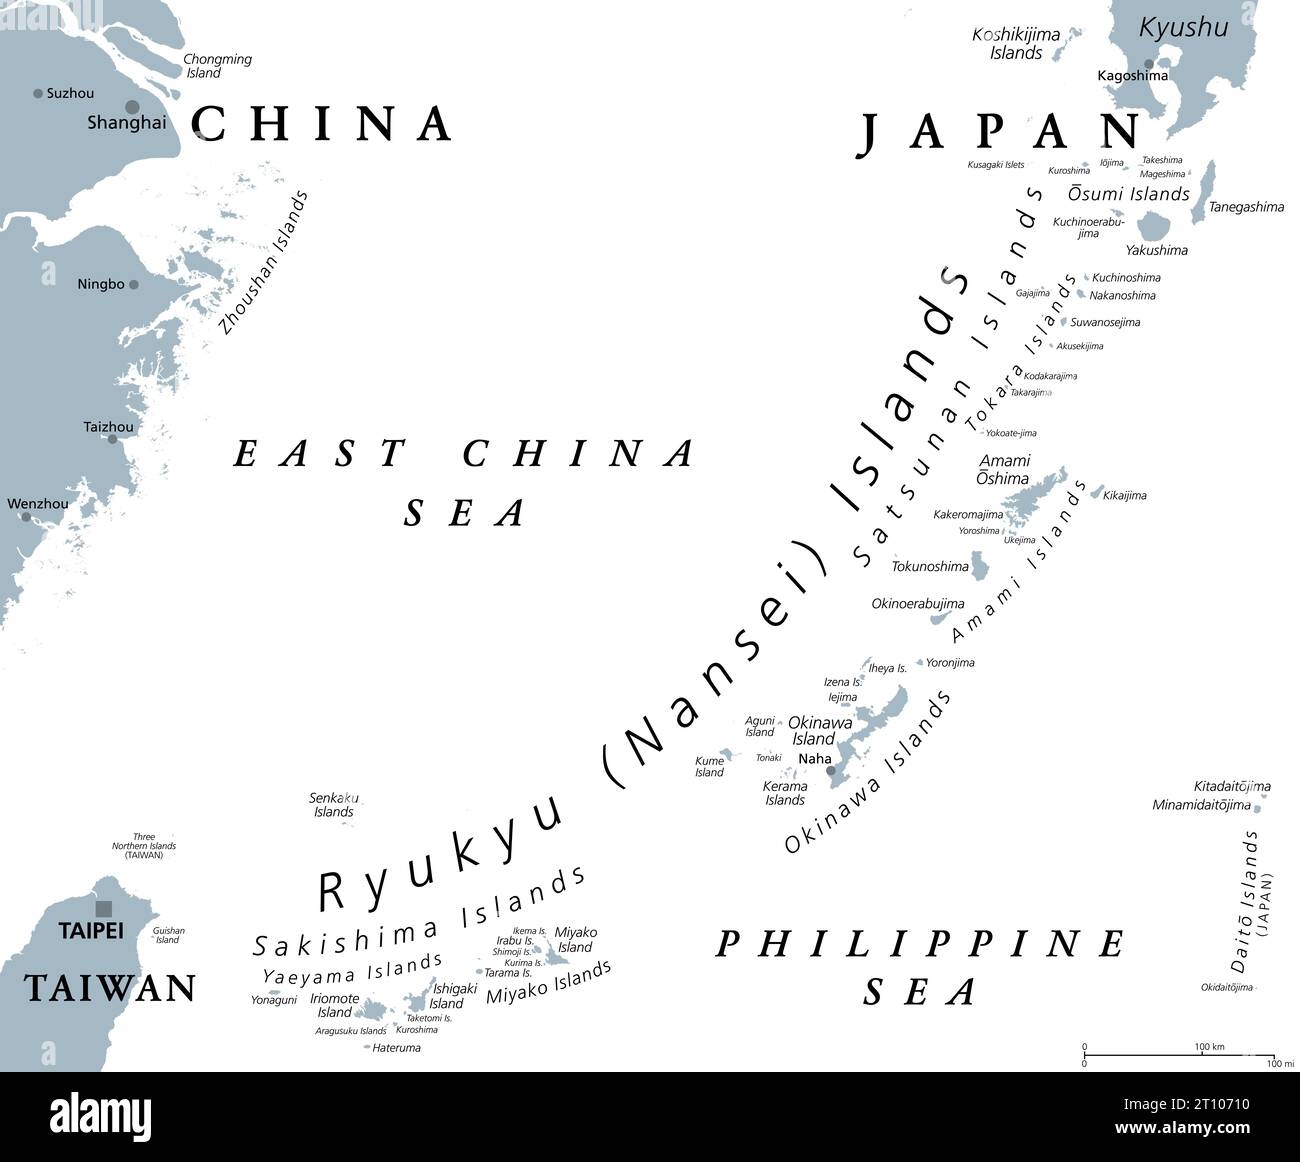 Ryukyu-Inseln oder Nansei-Inseln, graue politische Karte. Ryukyu Arc, eine japanische, überwiegend vulkanische Inselkette, die sich von Kyushu bis zur Yonaguni-Insel erstreckt. Stockfoto